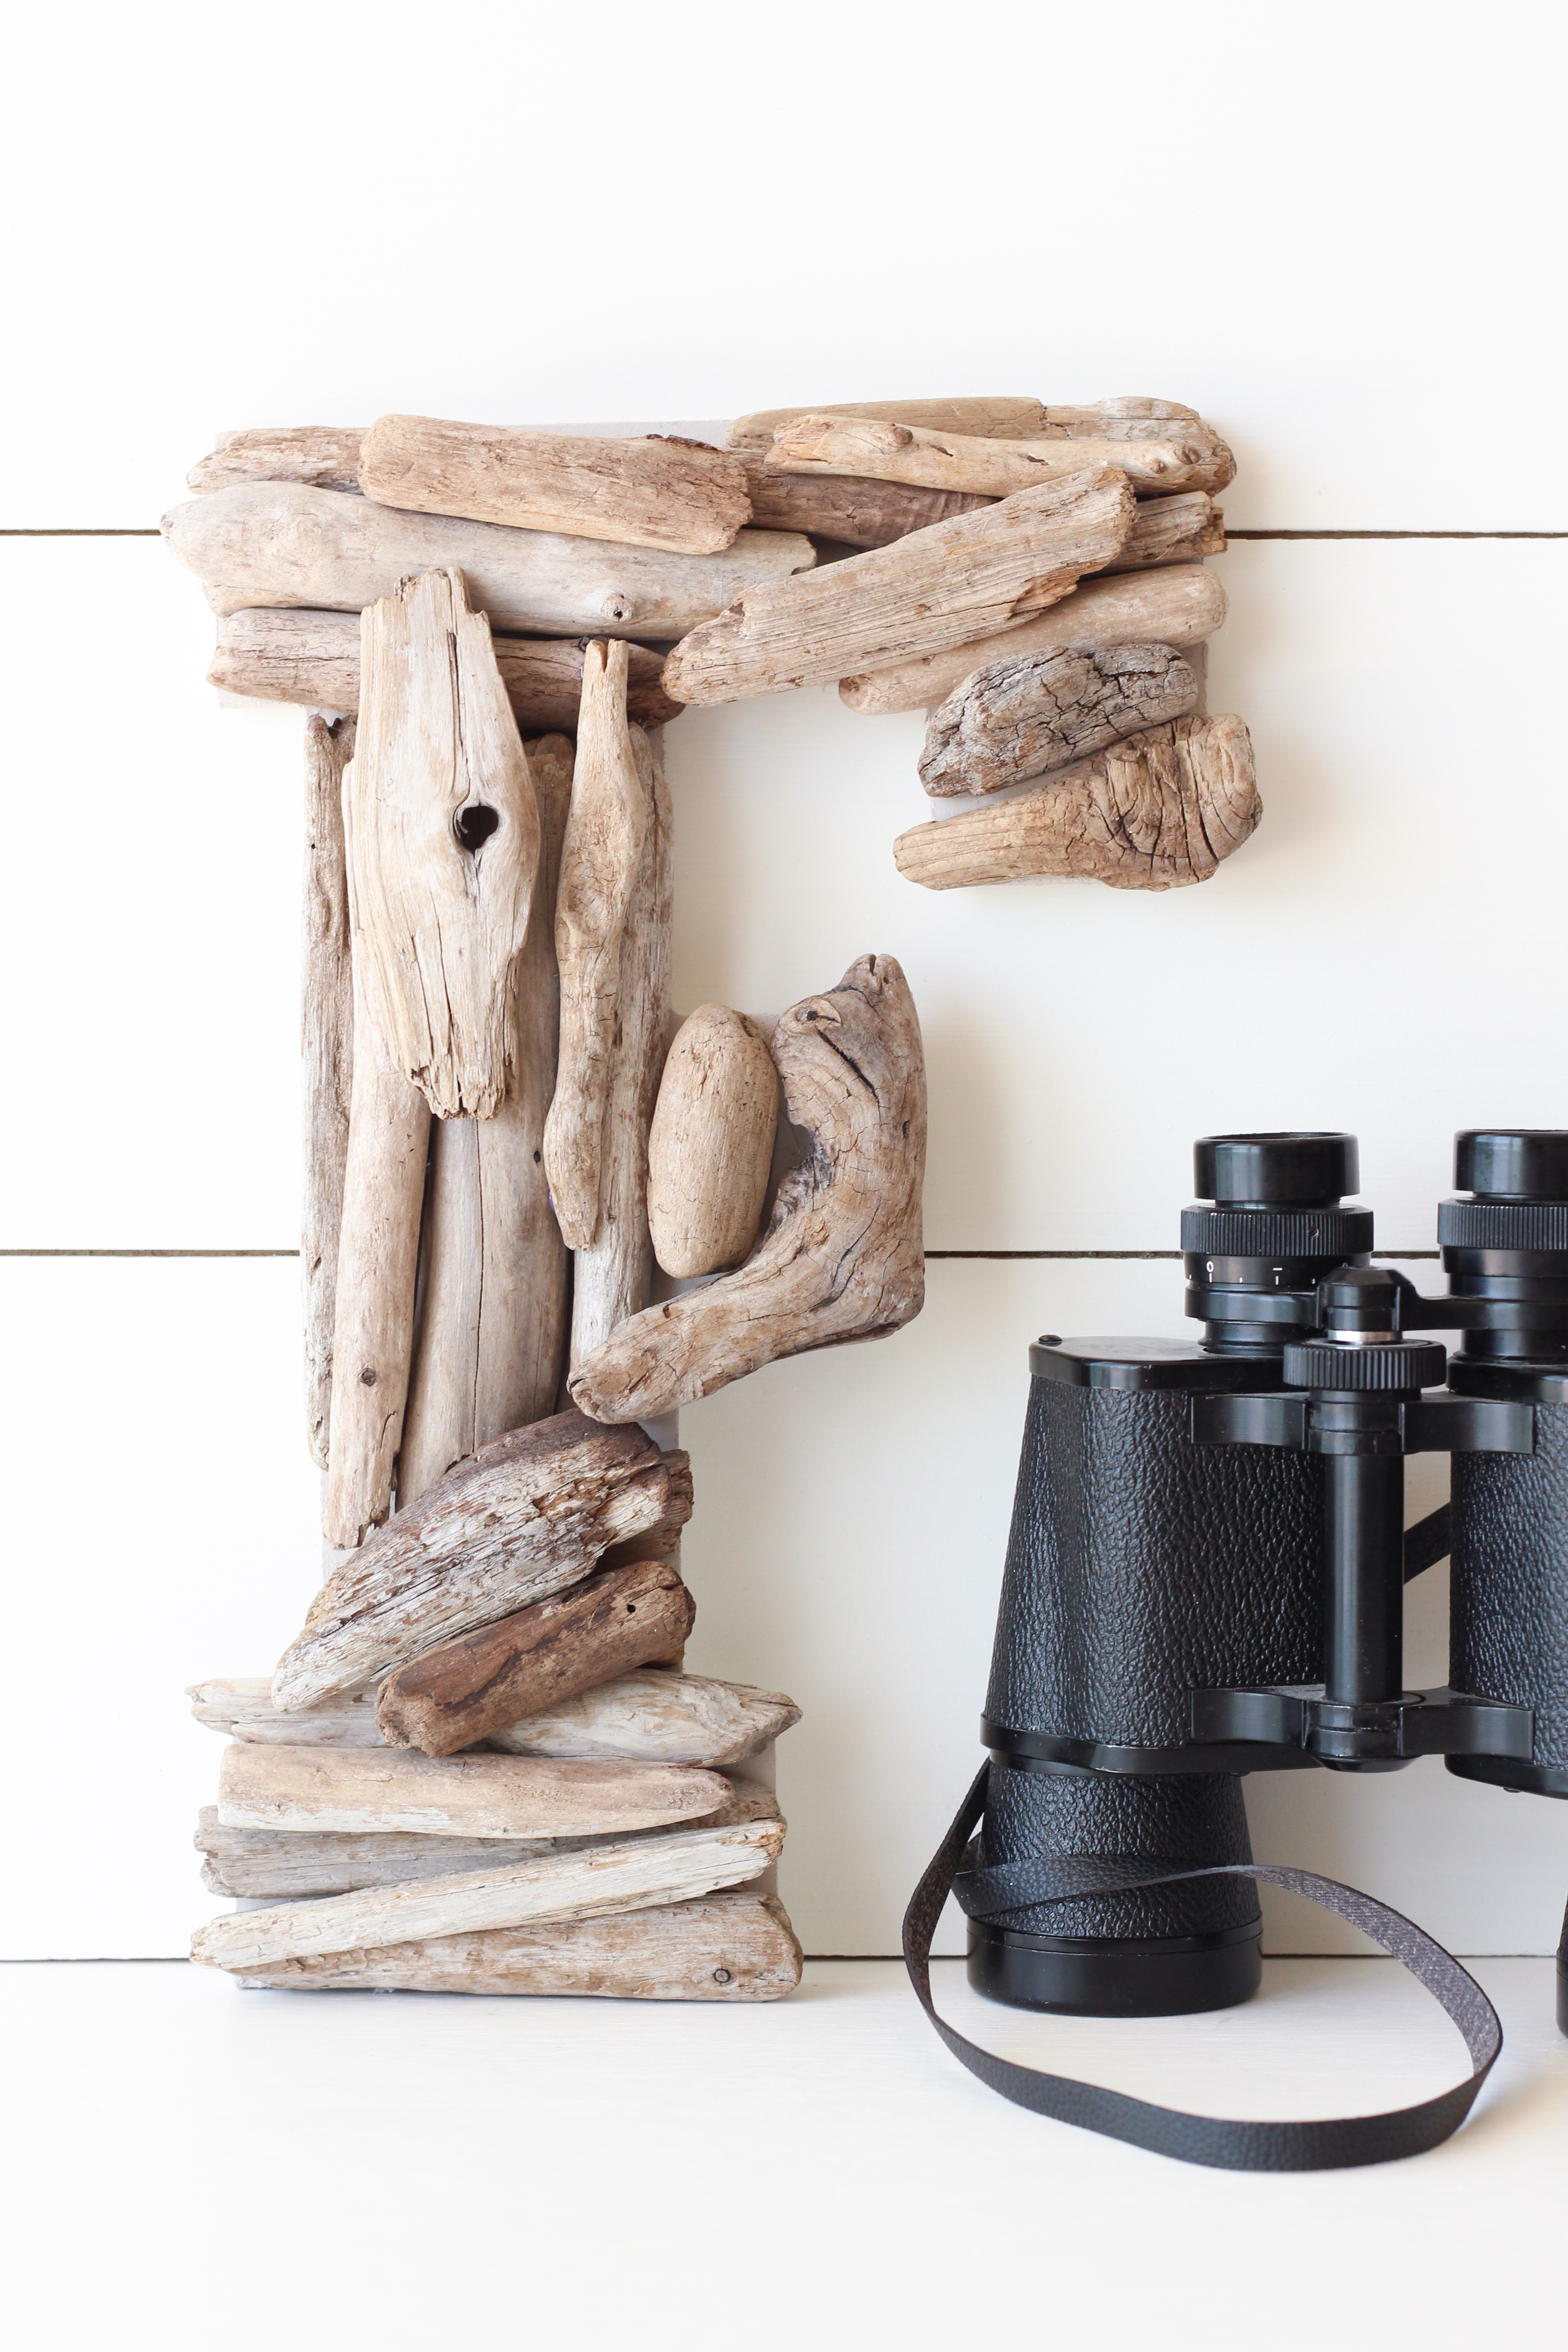 The driftwood letter F beside binoculars.